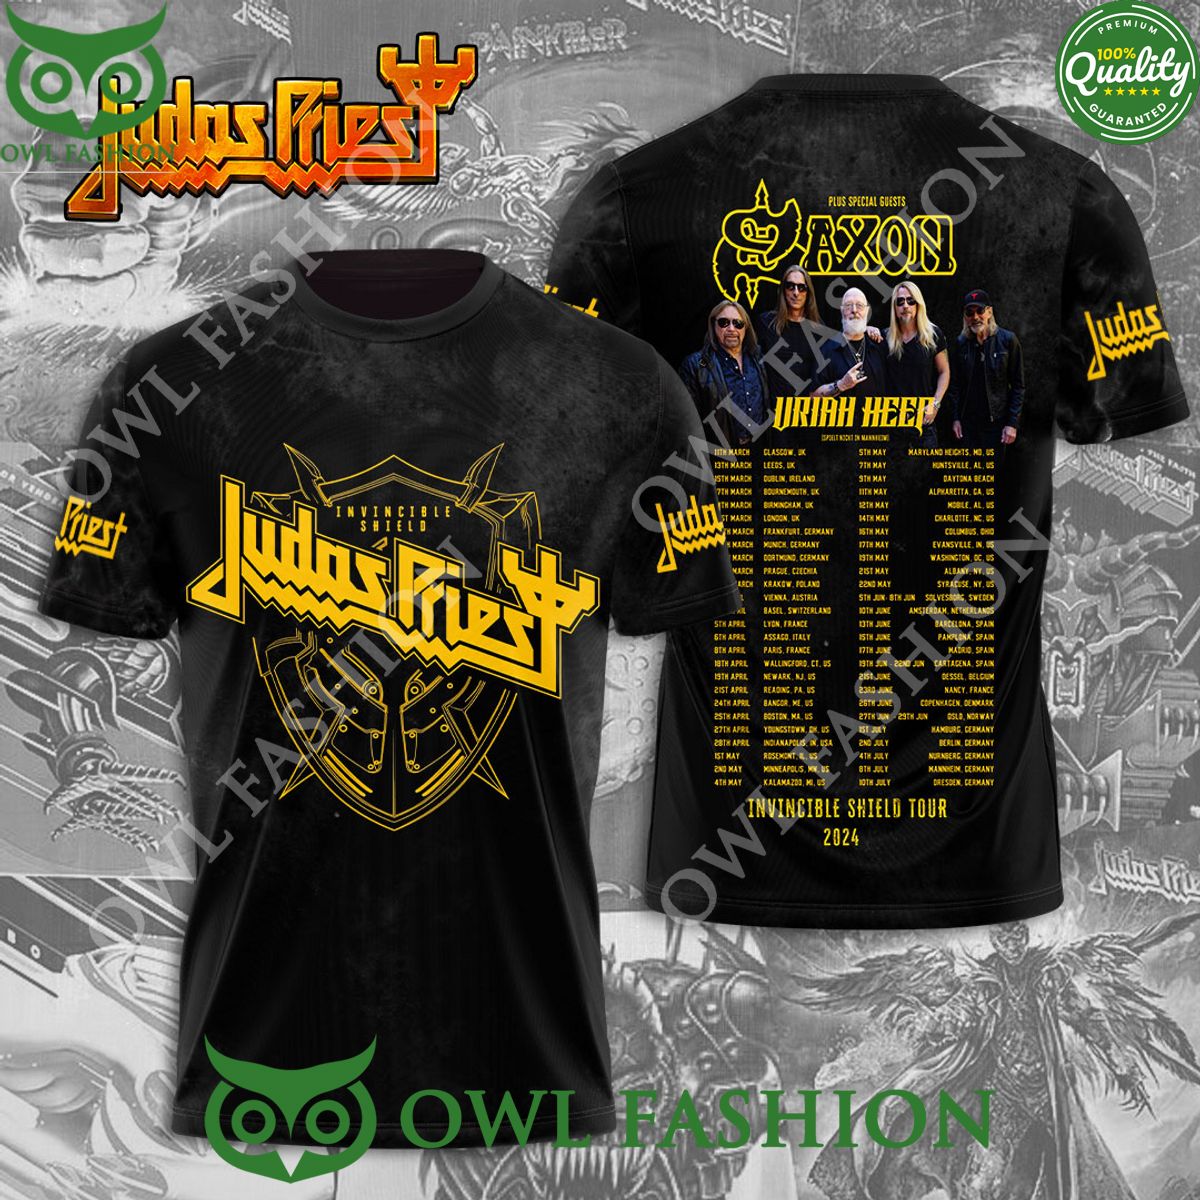 Judas Priest 3D Saxon Uriah Heep Tour 2024 3d t shirt